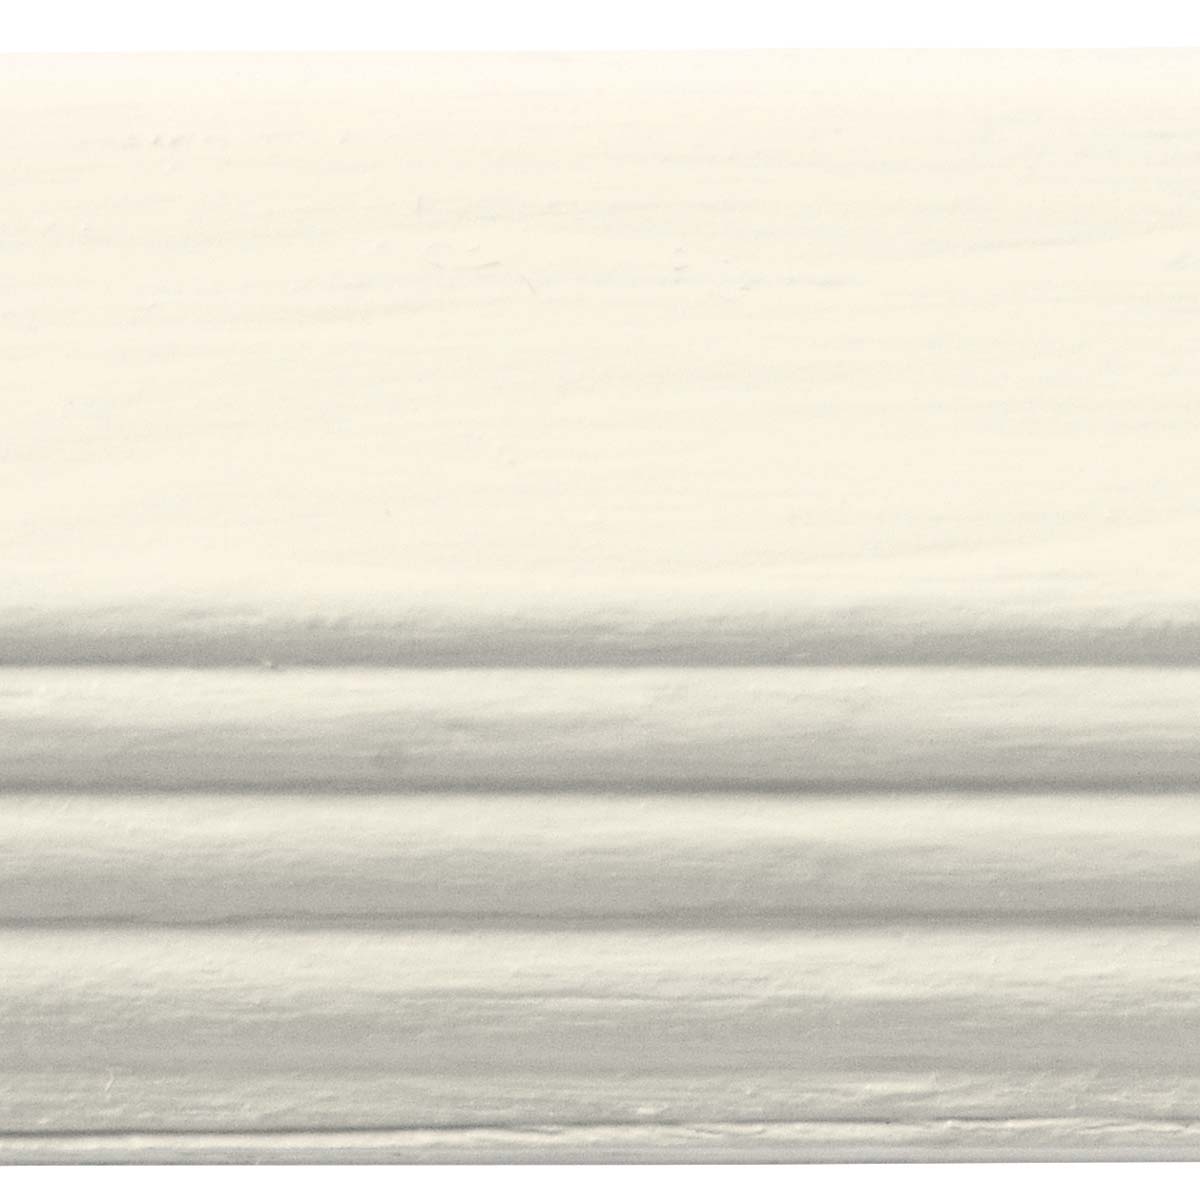 Waverly ® Inspirations Chalk Finish Acrylic Paint - Ivory, 16 oz. - 44864E